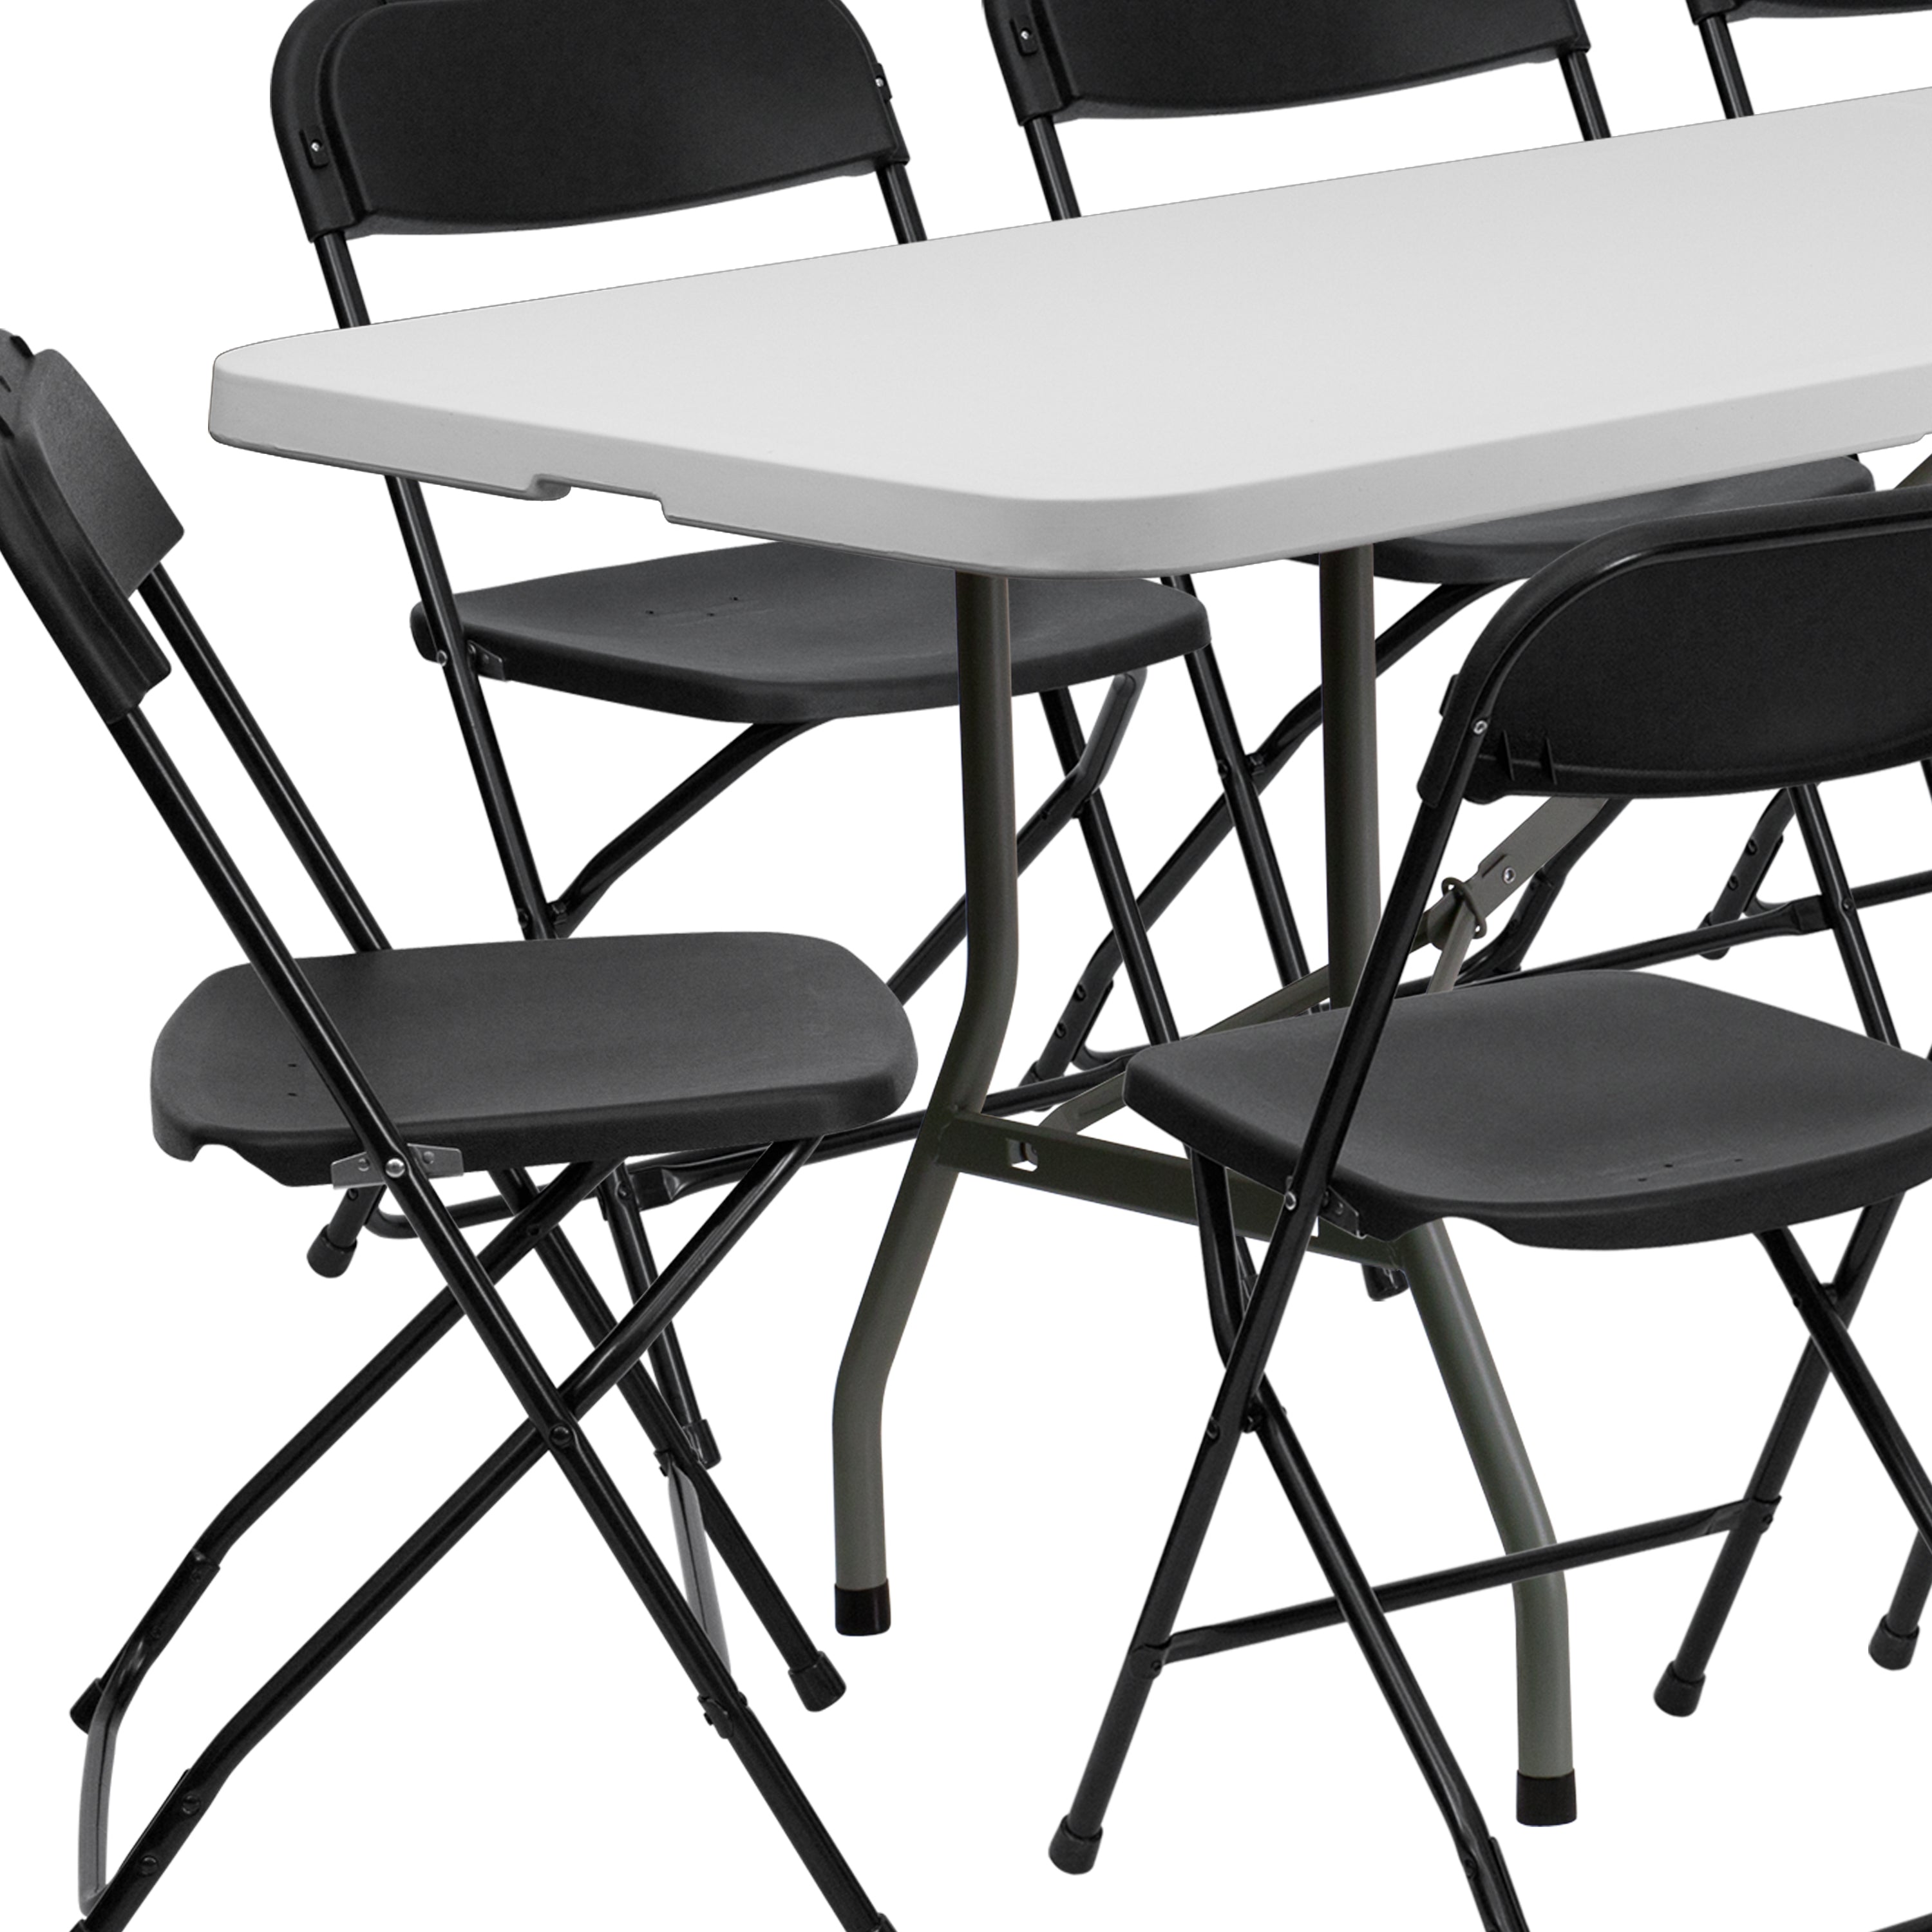 30"W x 96"L Bi-Fold Plastic Event/Training Folding Table Set with 10 Folding Chairs-Plastic Folding Table and Chair Set-Flash Furniture-Wall2Wall Furnishings